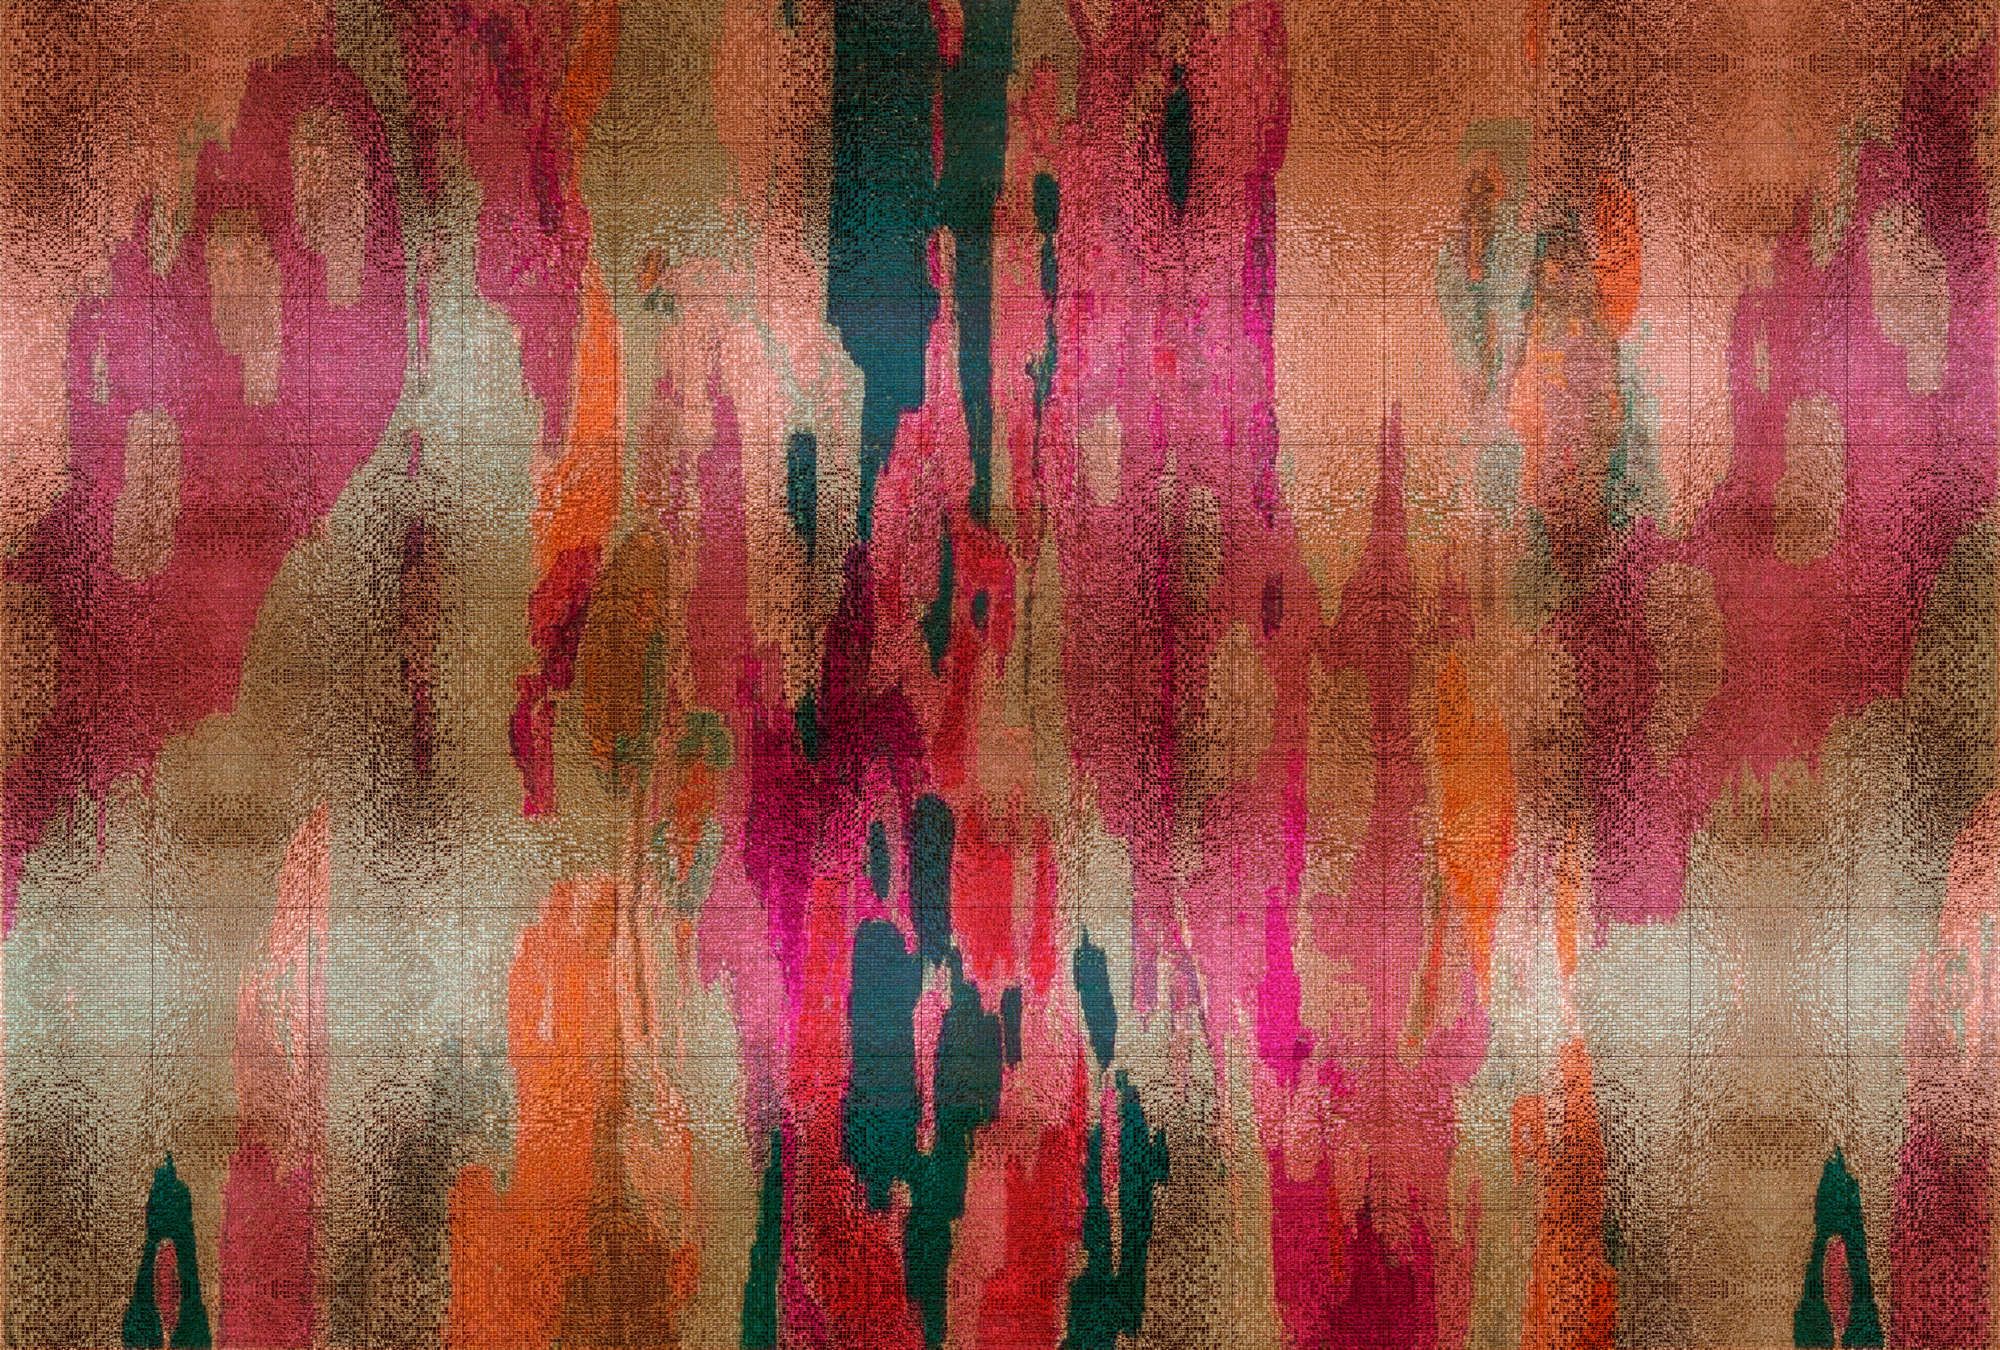             Fotomural »marielle 2« - Degradados de color violeta, naranja, petróleo con estructura de mosaico - Tela no tejida ligeramente texturada
        